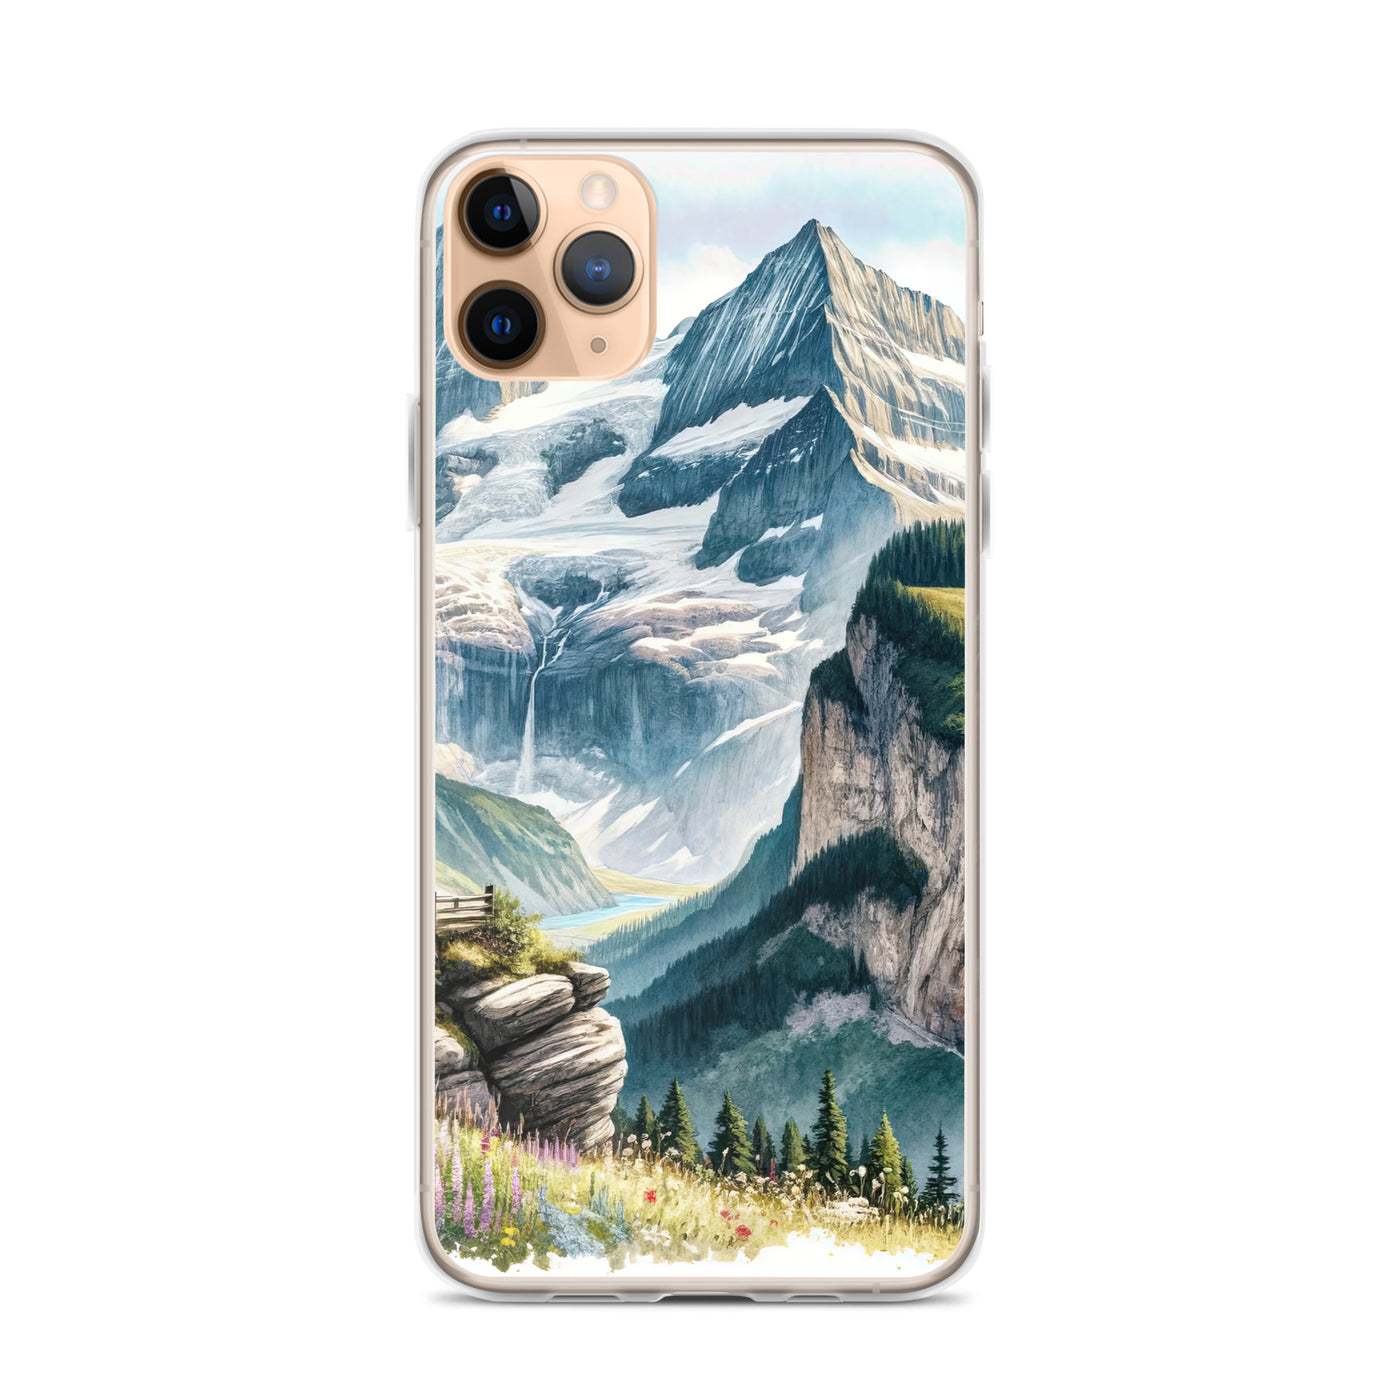 Aquarell-Panoramablick der Alpen mit schneebedeckten Gipfeln, Wasserfällen und Wanderern - iPhone Schutzhülle (durchsichtig) wandern xxx yyy zzz iPhone 11 Pro Max